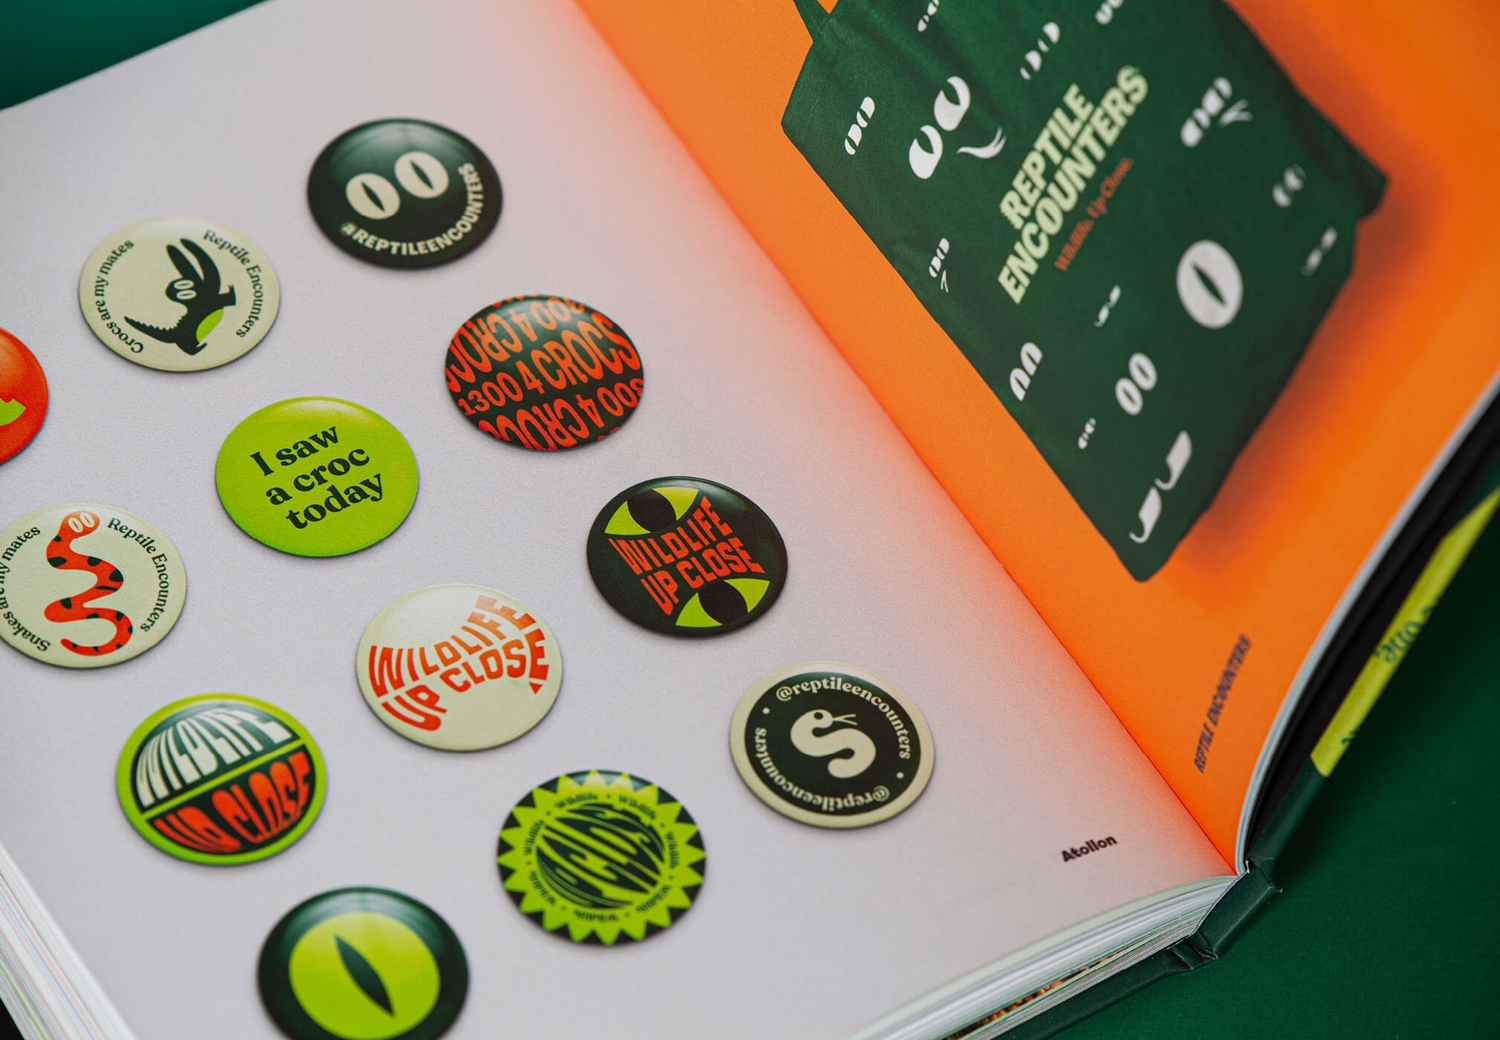 Reptile Encounters - Brandbook Internal Spread Badges | Atollon - a design company